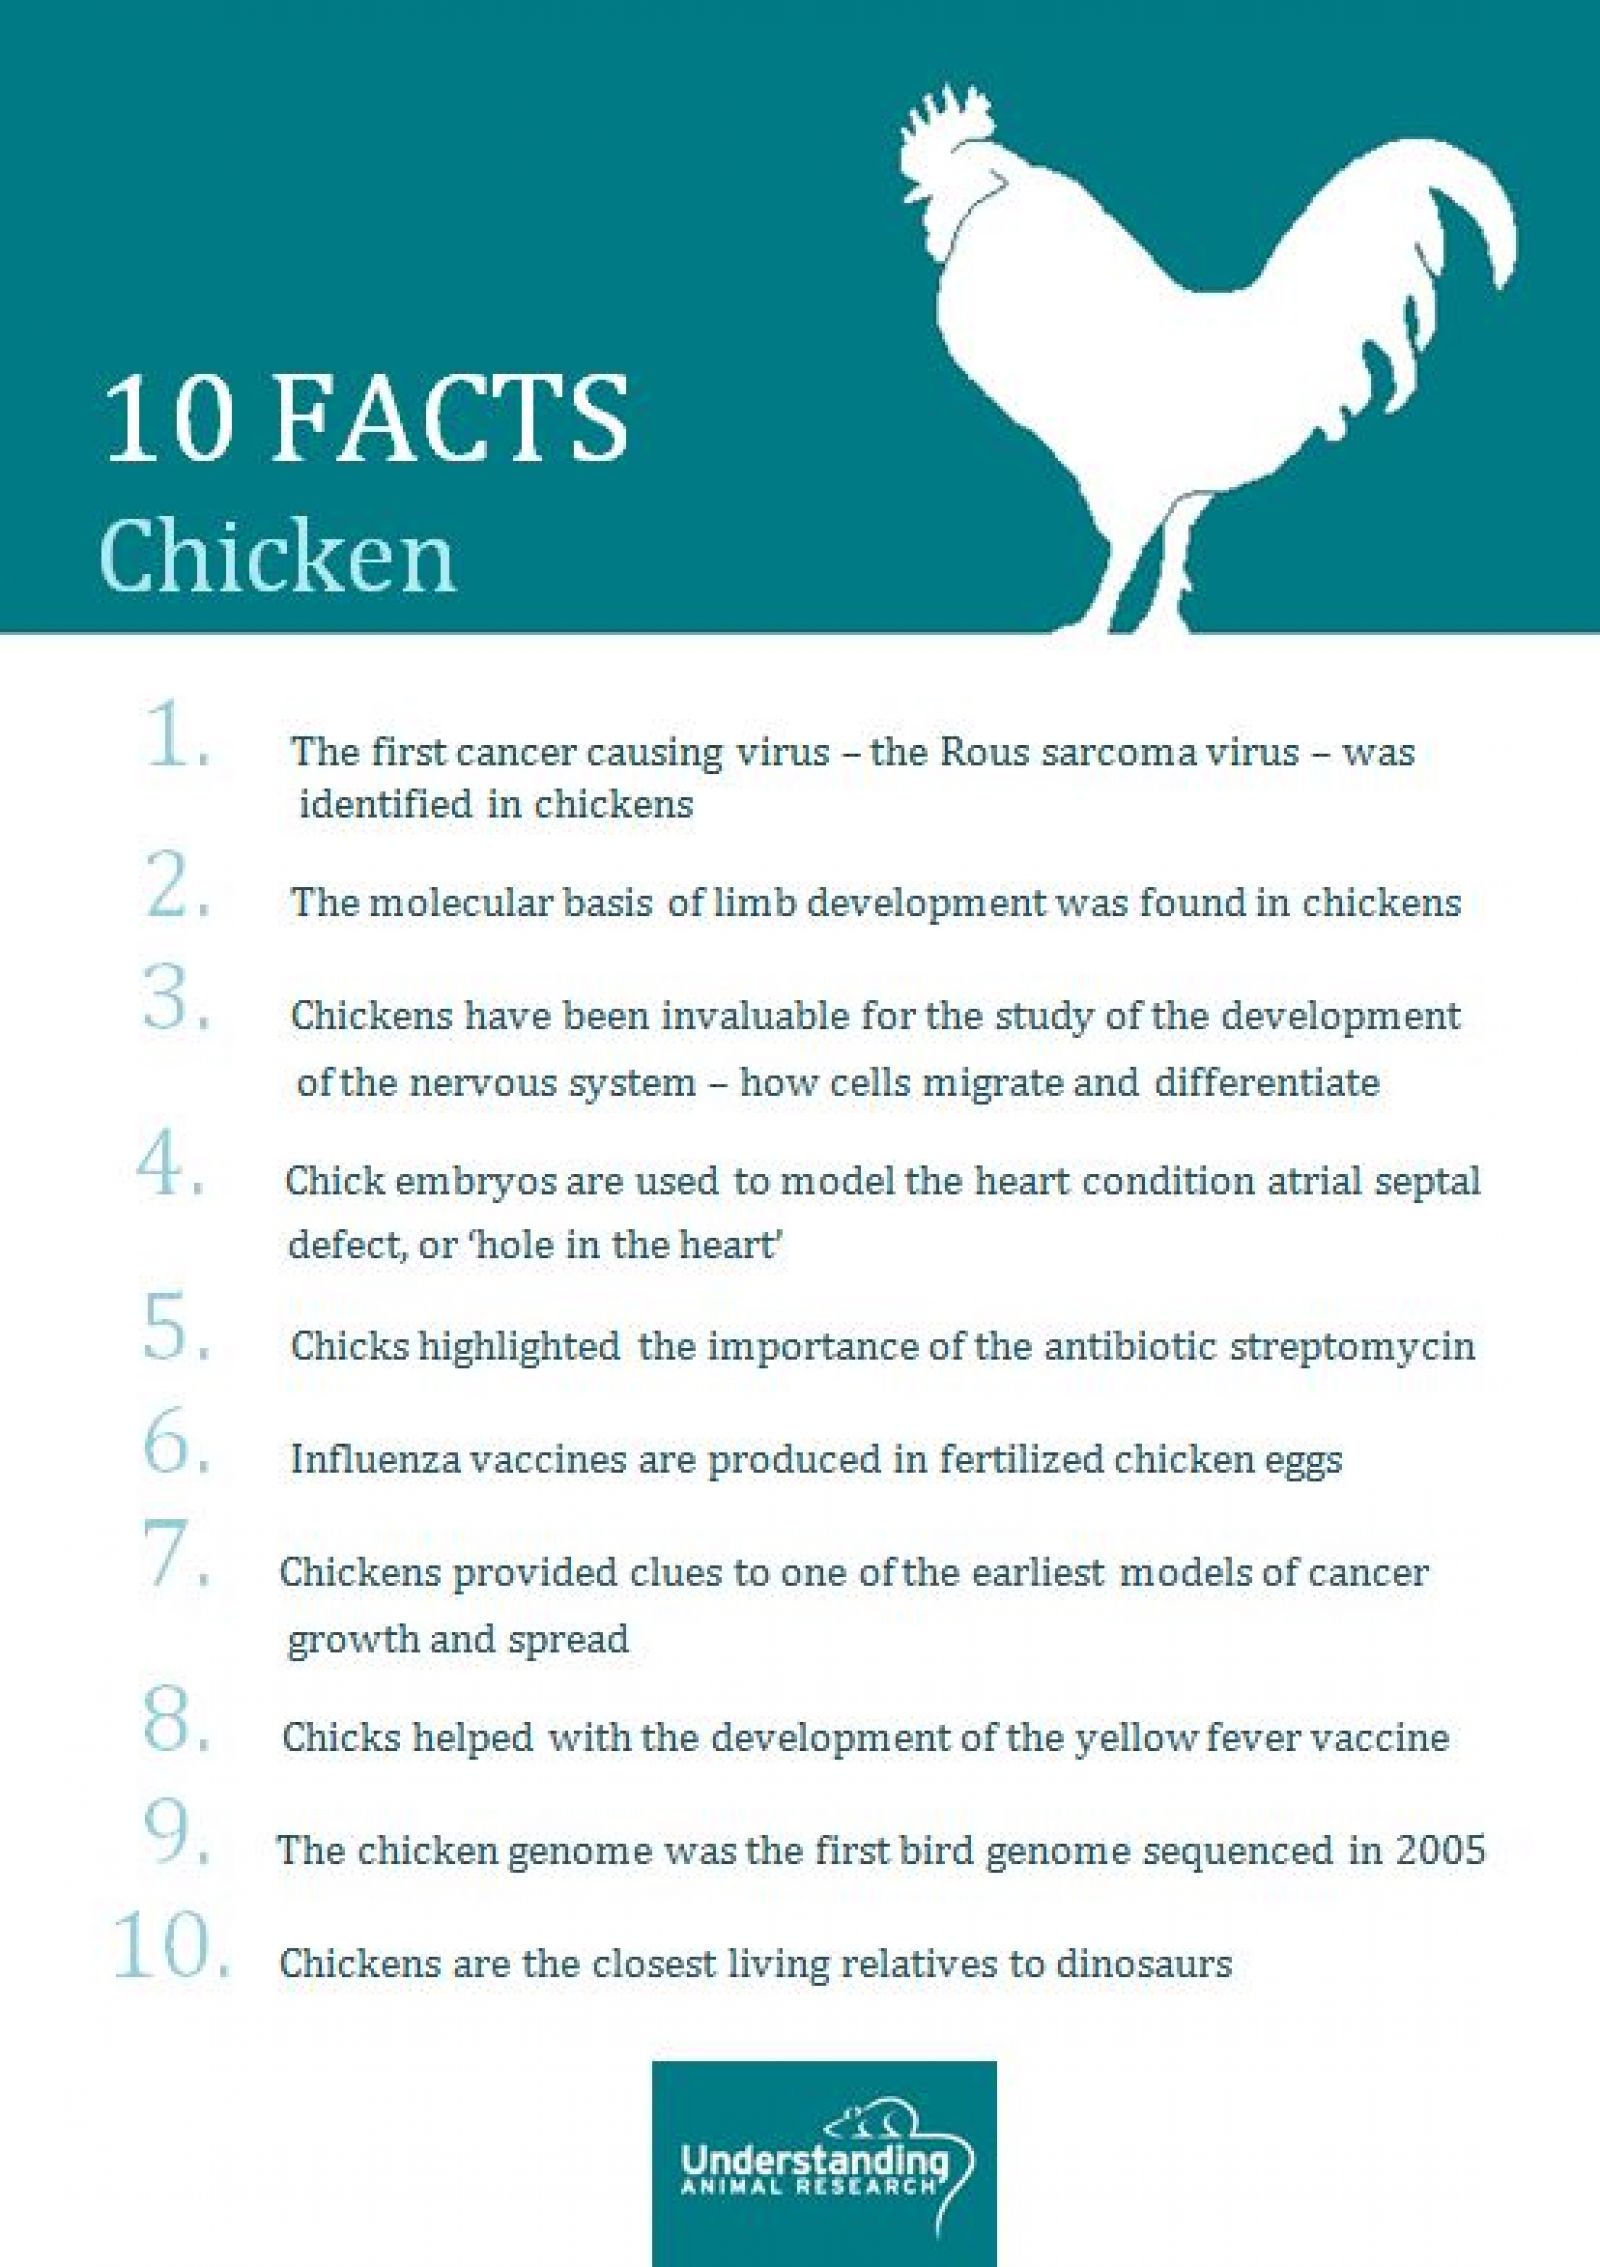 Chicken 10 facts